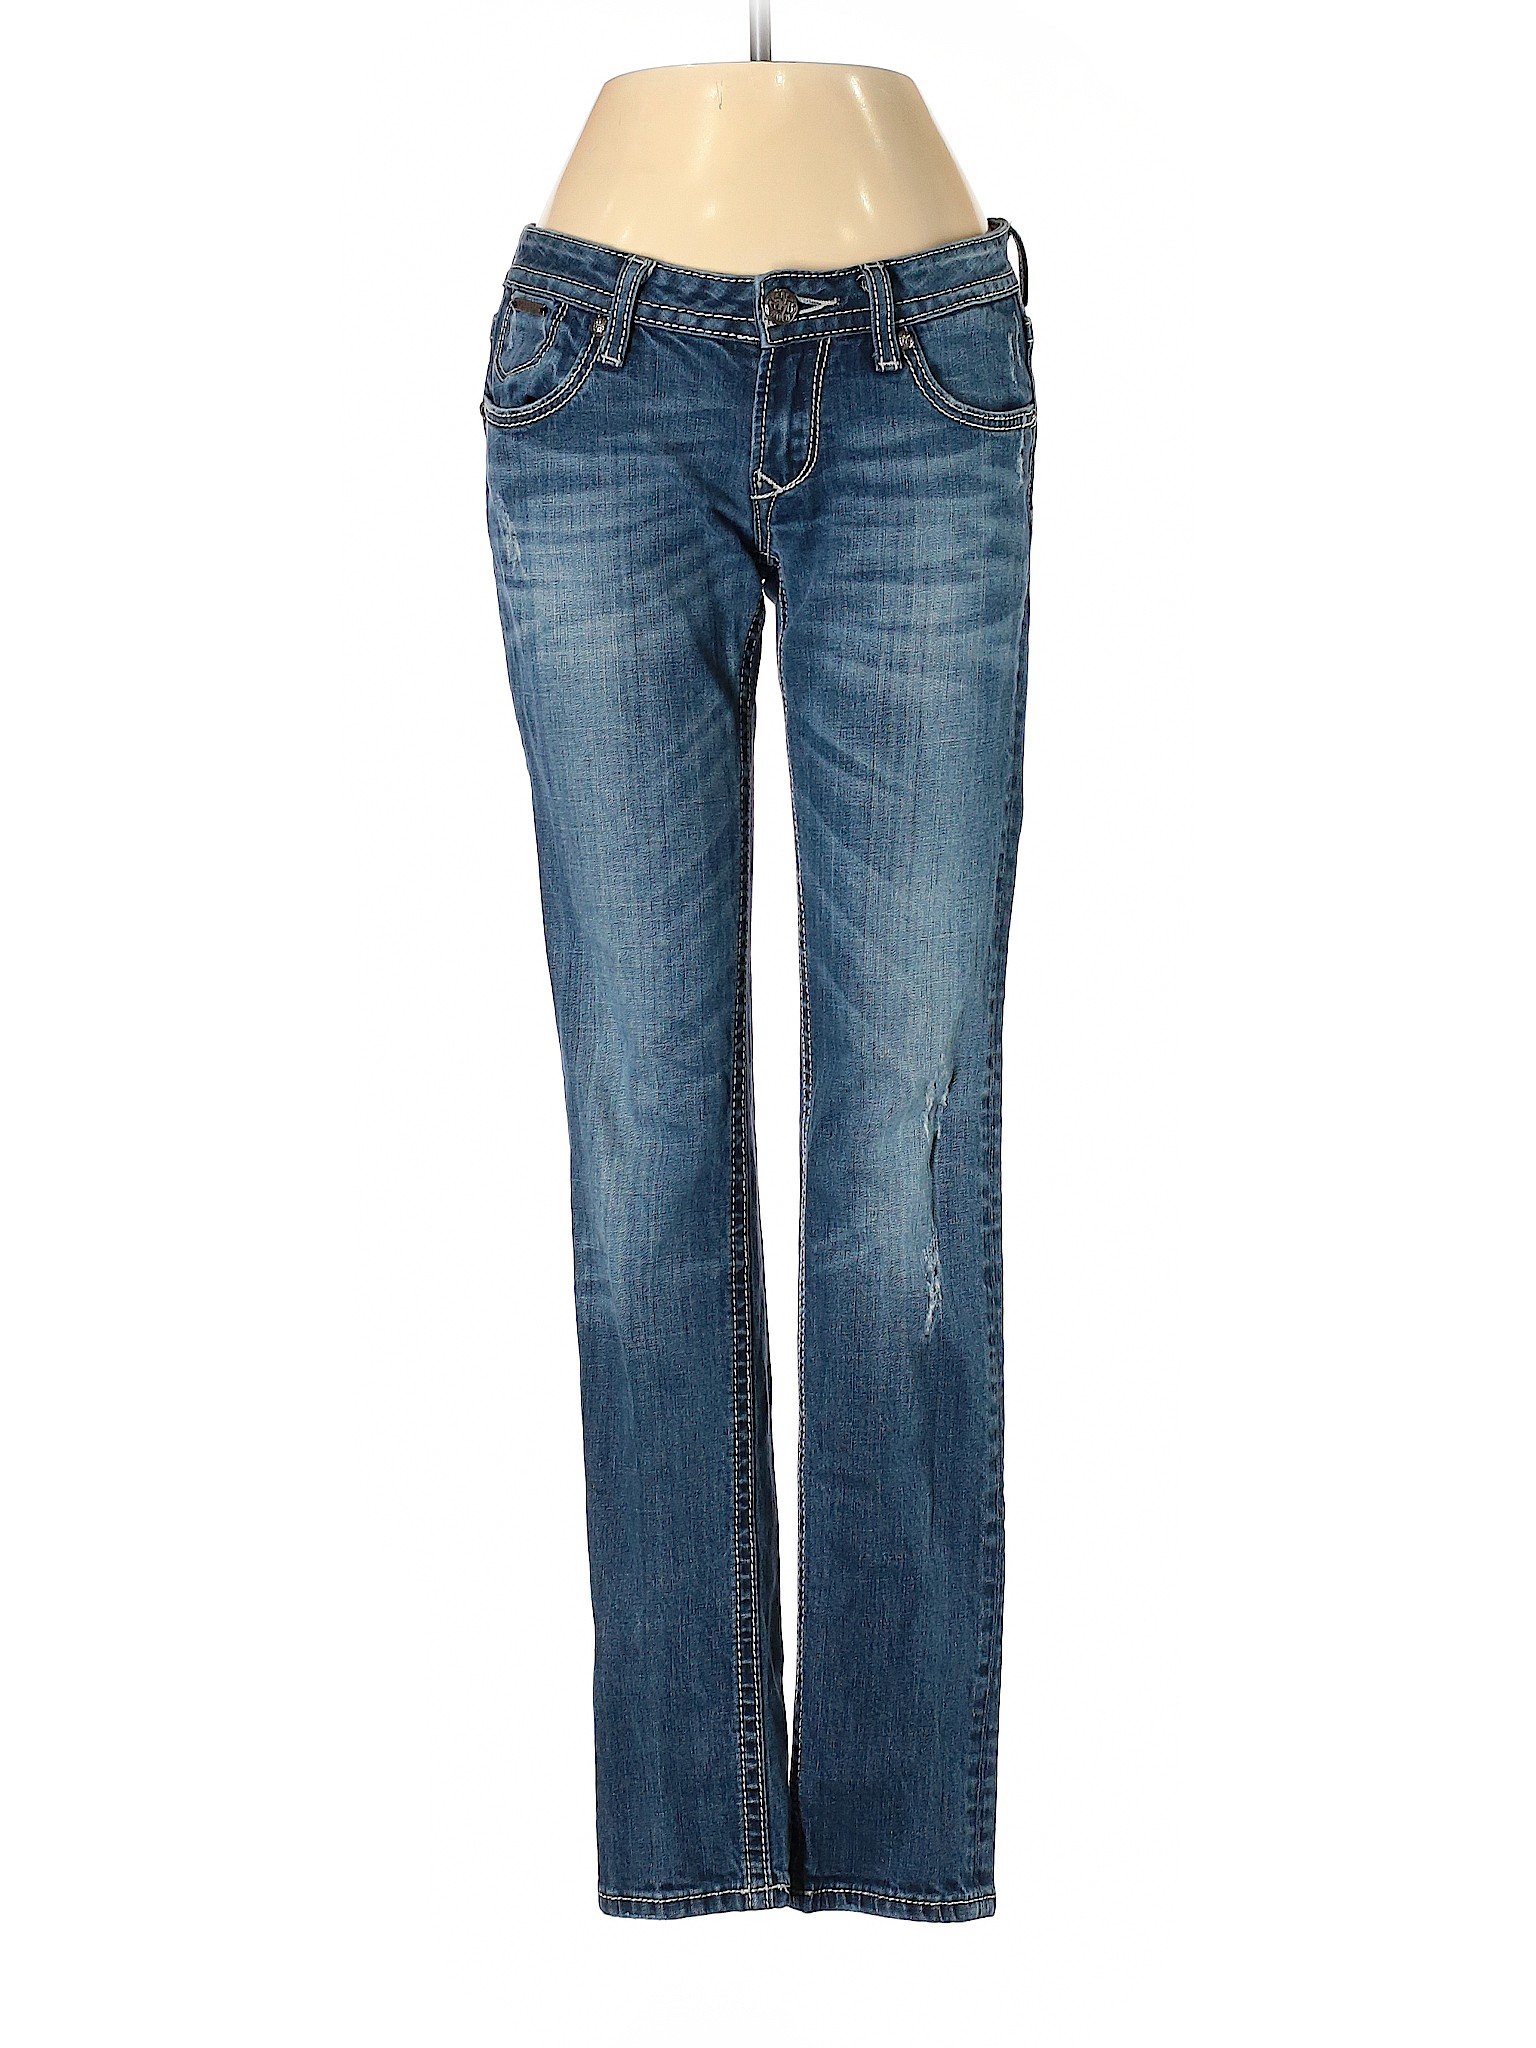 Rerock for Express Women Blue Jeans 2 | eBay